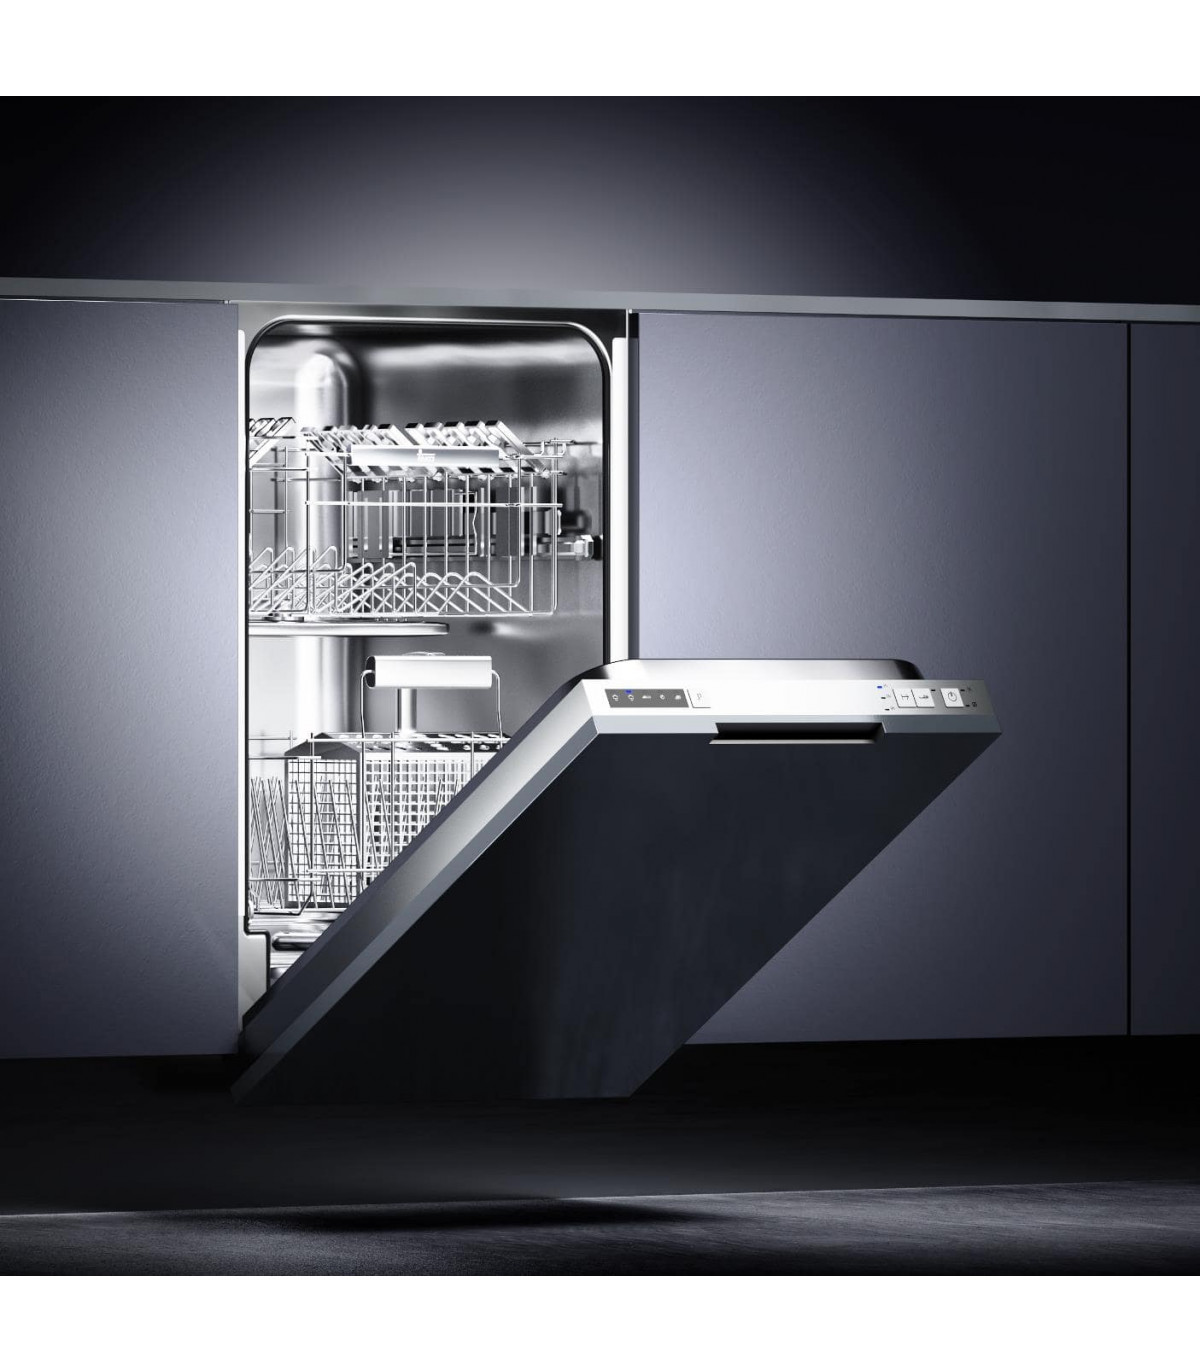 Посудомоечная 45см купить. Посудомойка Teka dw7 45 Fi внутри. Полновстраиваемая посудомоечная машина 45 см. Встраиваемая посудомоечная машина Samsung. Посудомойка Beko встраиваемая 60.